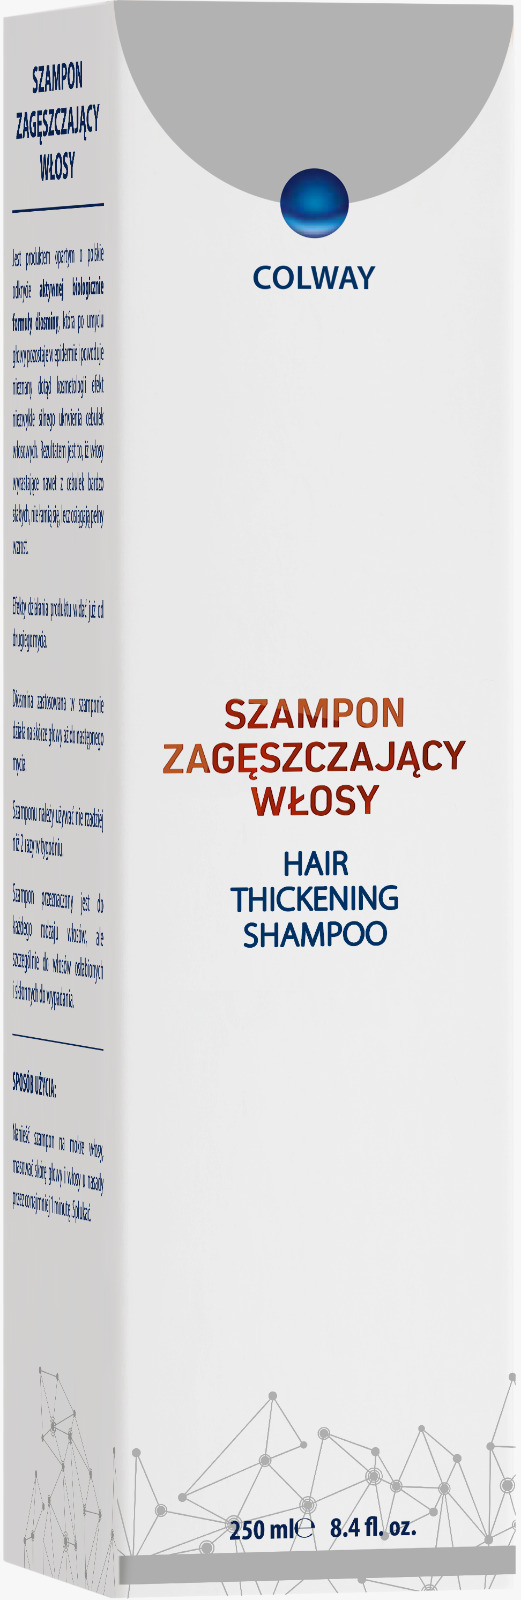 szampon zagęszczający włosy colway w apteka doz